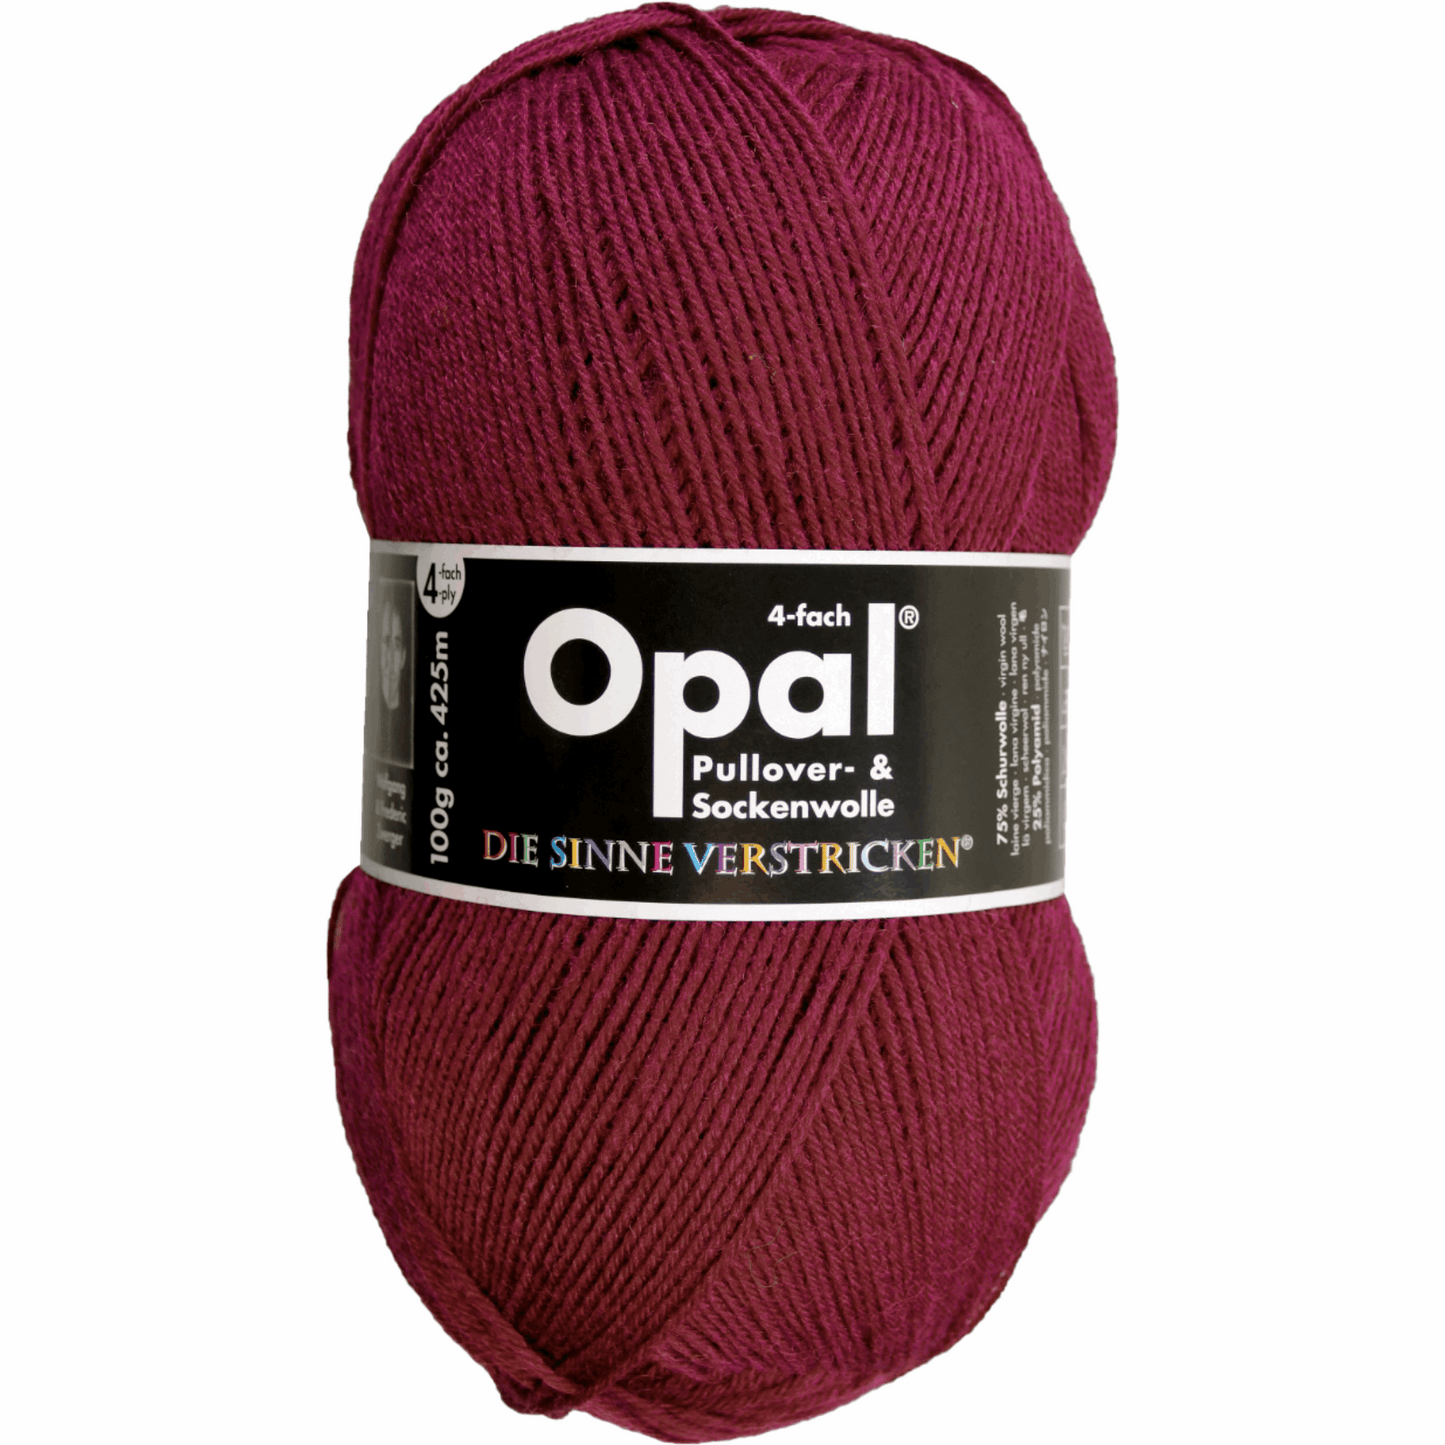 Opal plain 4 threads. 100g 2011/12, 97760, color burgundy 5196